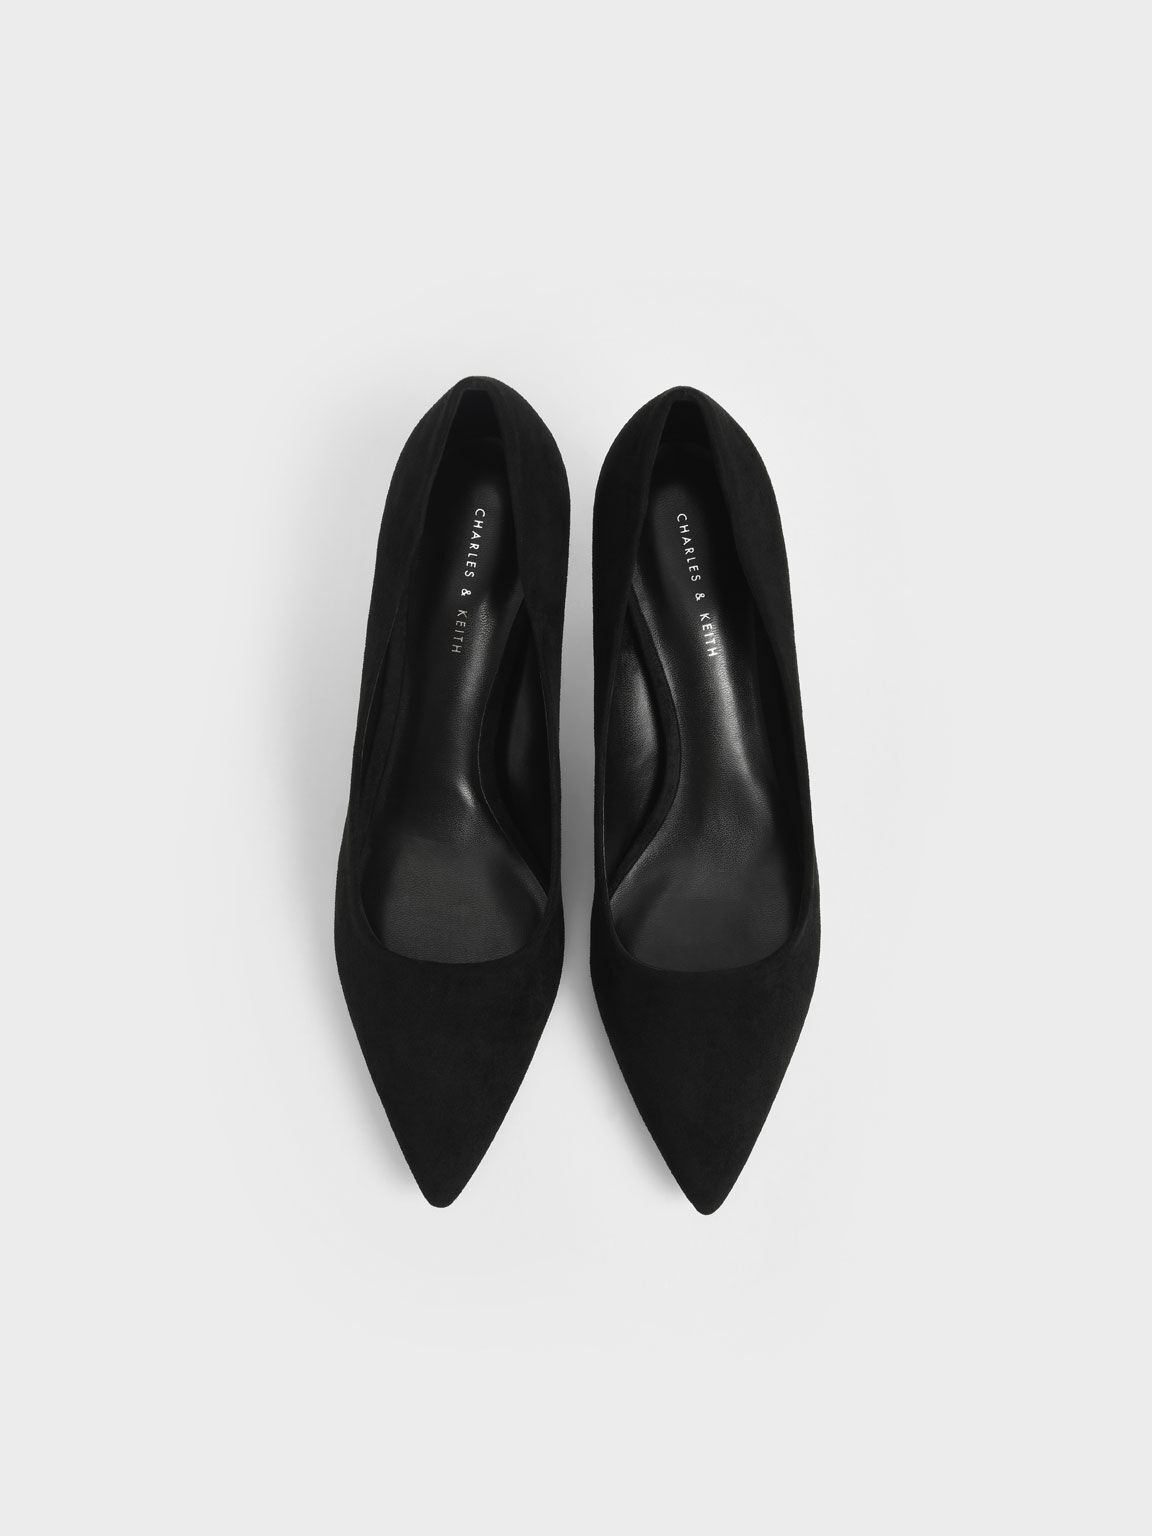 Party Wear Black Suede Wedge heels sandals for ladies at Rs 540/pair in  Gurugram